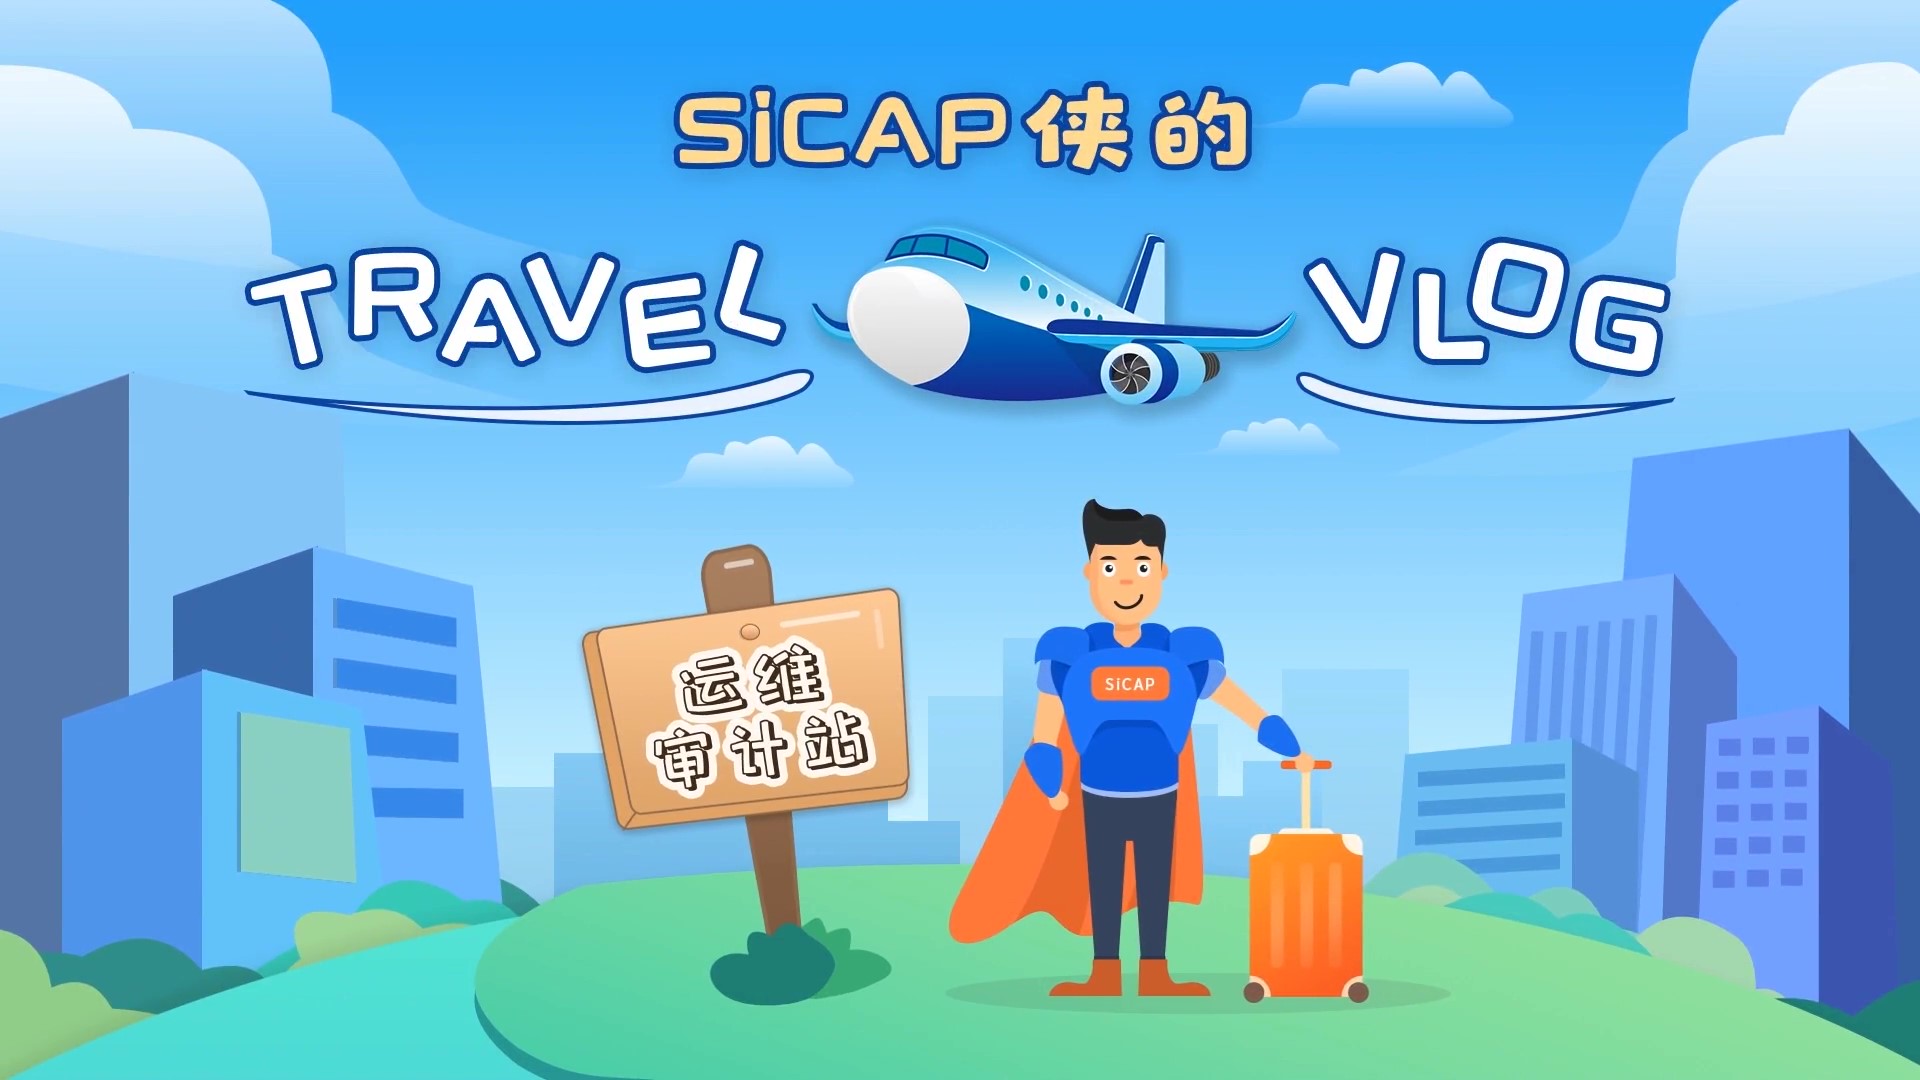 SiCAP侠的Travel Vlog-运维审计站